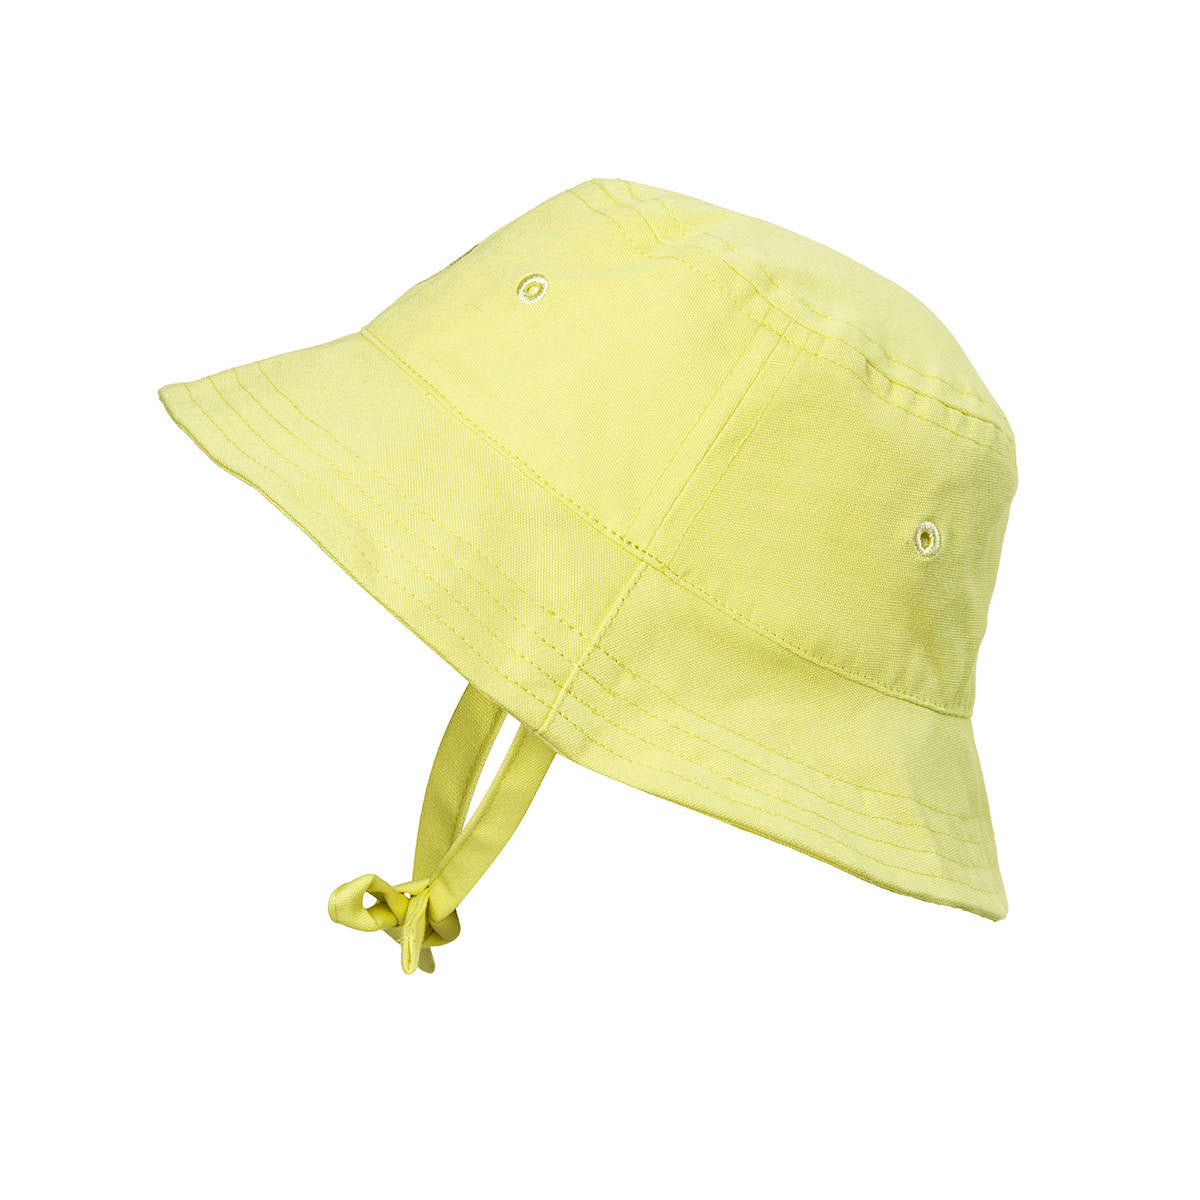 Elodie Details Sunny Day Bucket Hat Yellow 6-12 m, kapelusz dla dzieci z SPF 30 na lato i wakacje.